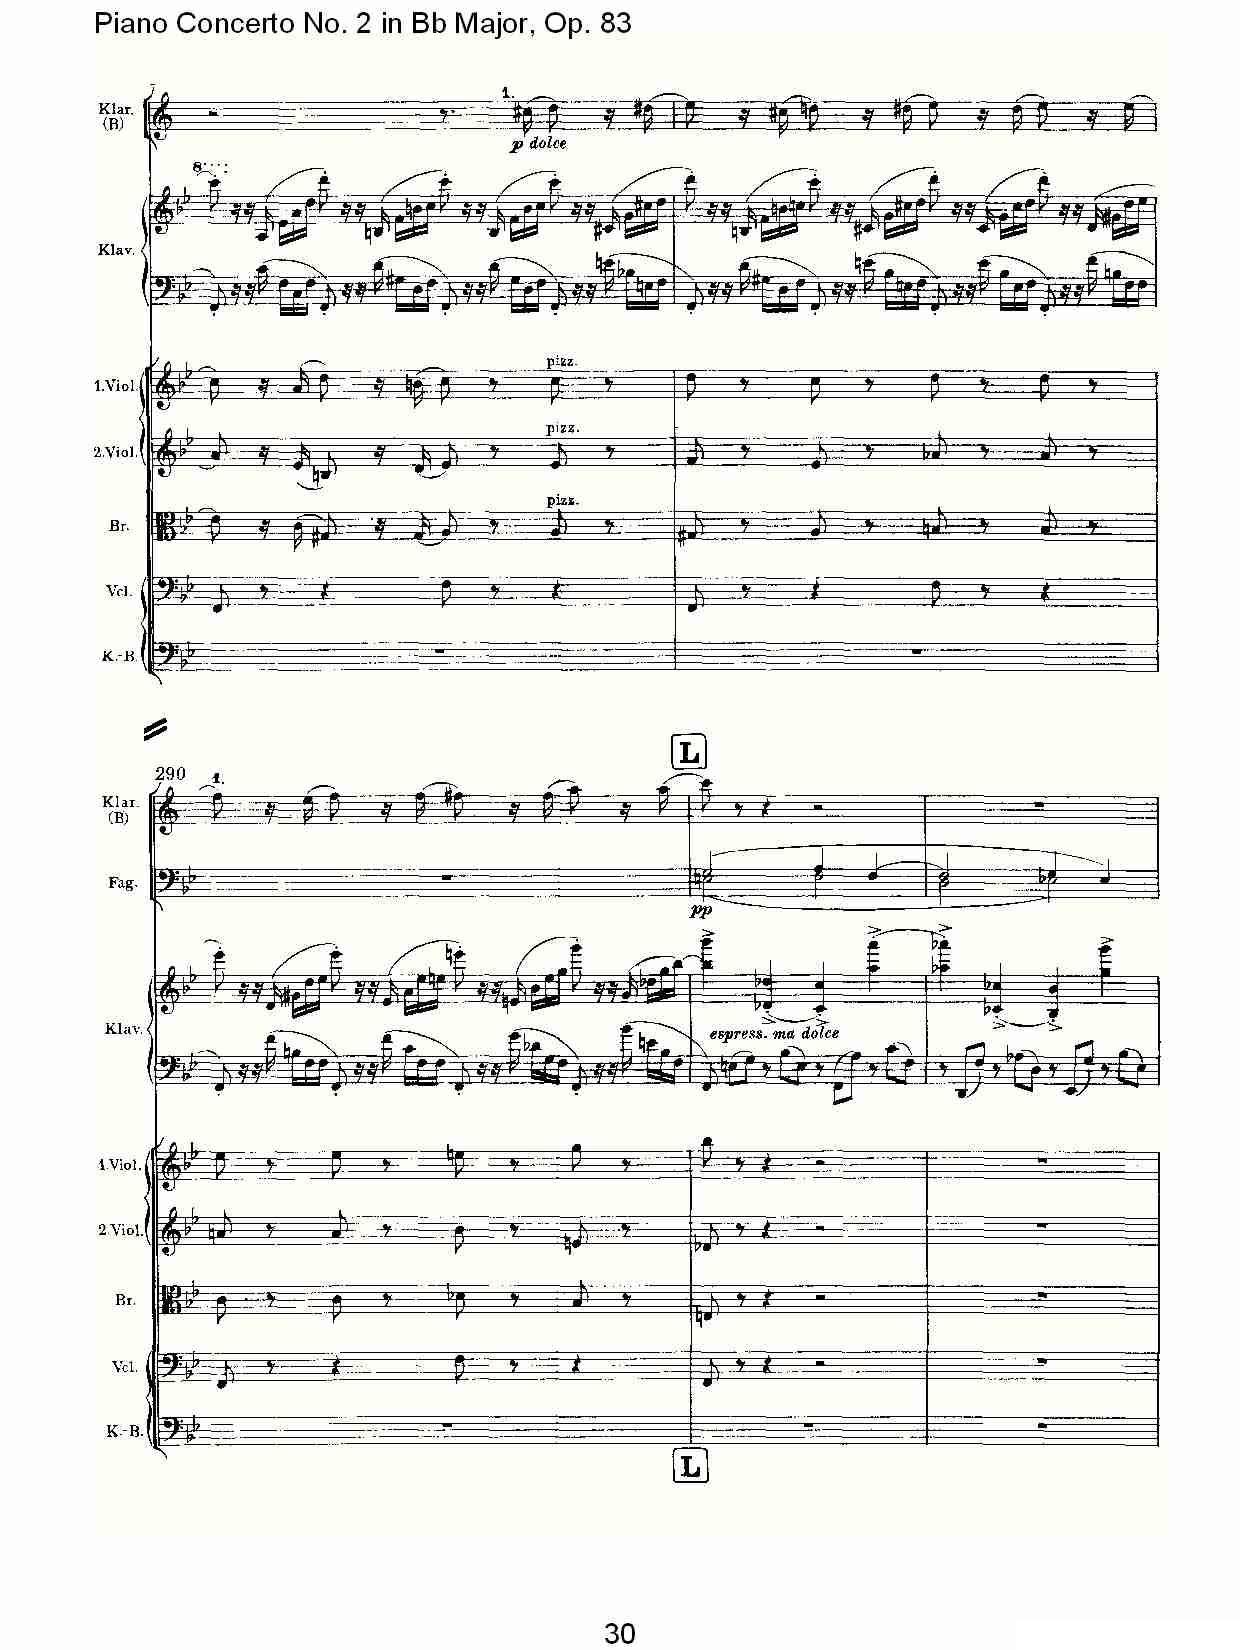 Bb大调钢琴第二协奏曲, Op.83第一乐章（一）钢琴曲谱（图31）